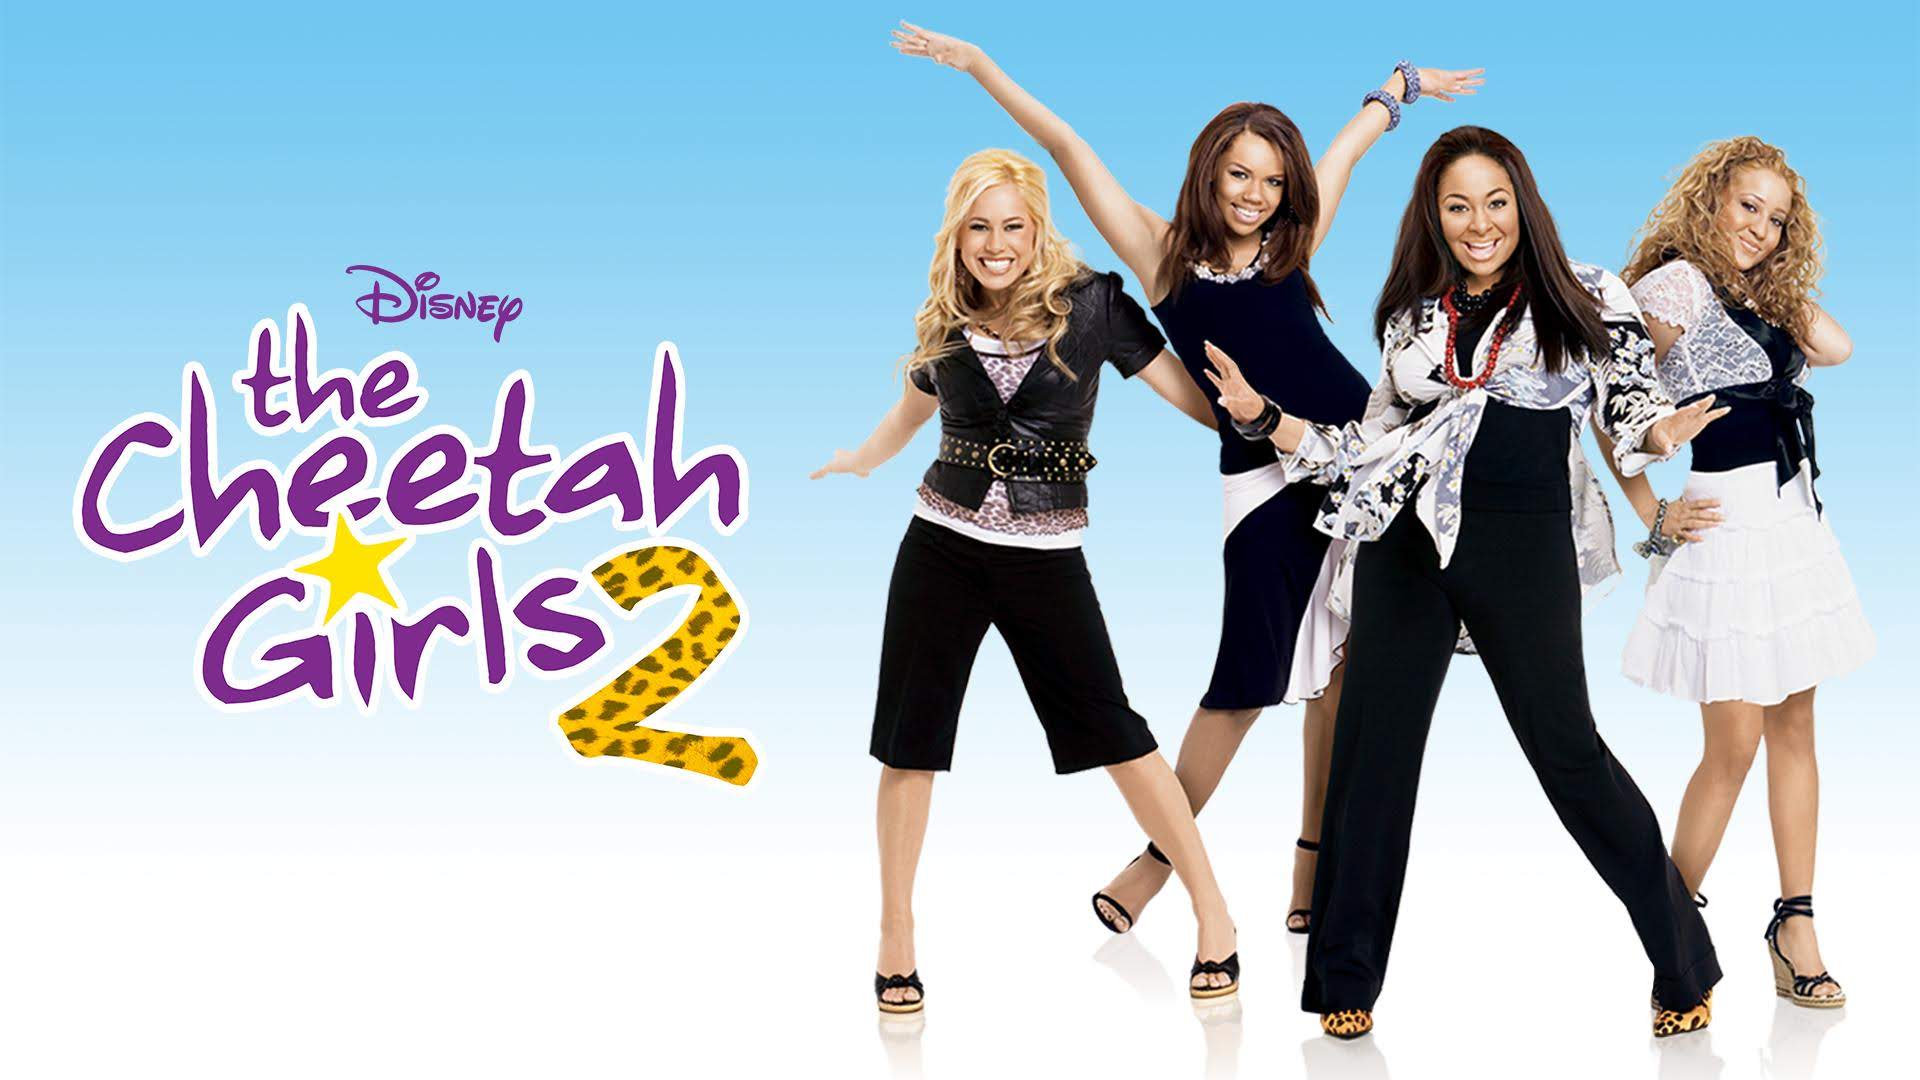 The Cheetah Girls 2 (TV Movie 2006)